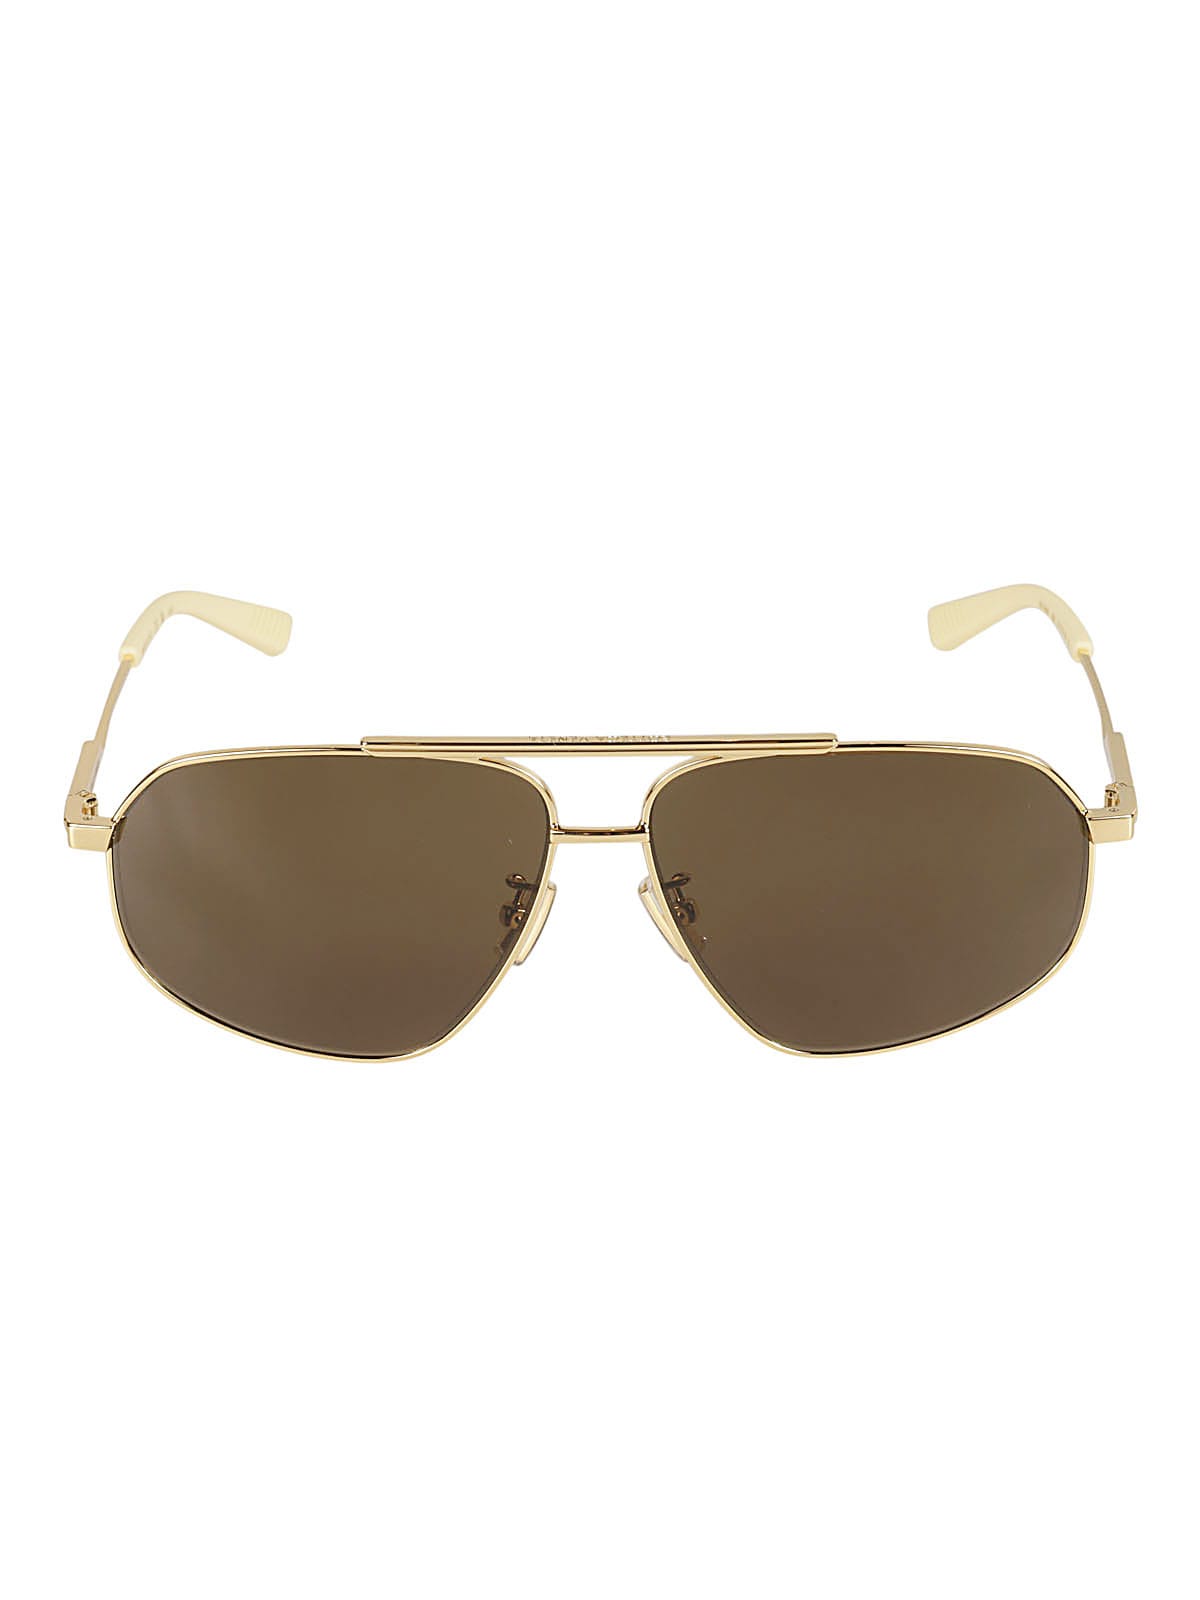 Bottega Veneta Eyewear Gold-Tone Aviatore Style Sunglasses